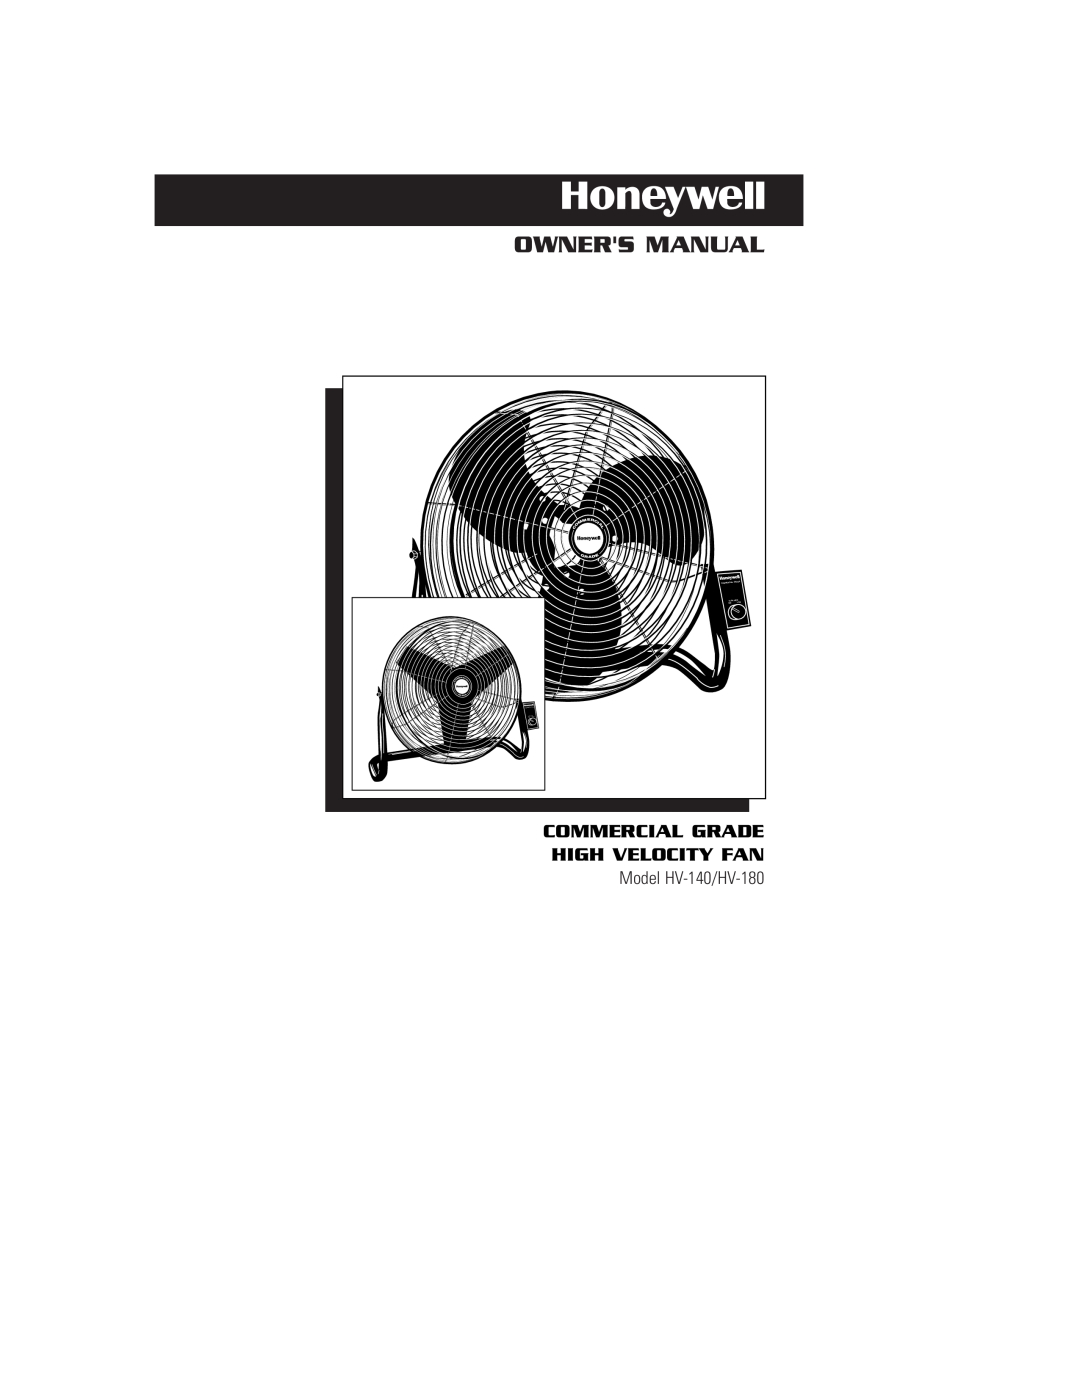 Honeywell HV180 owner manual Owners Manual, Commercial Grade High Velocity Fan, Model HV-140/HV-180, Gr Ad E, High Med 